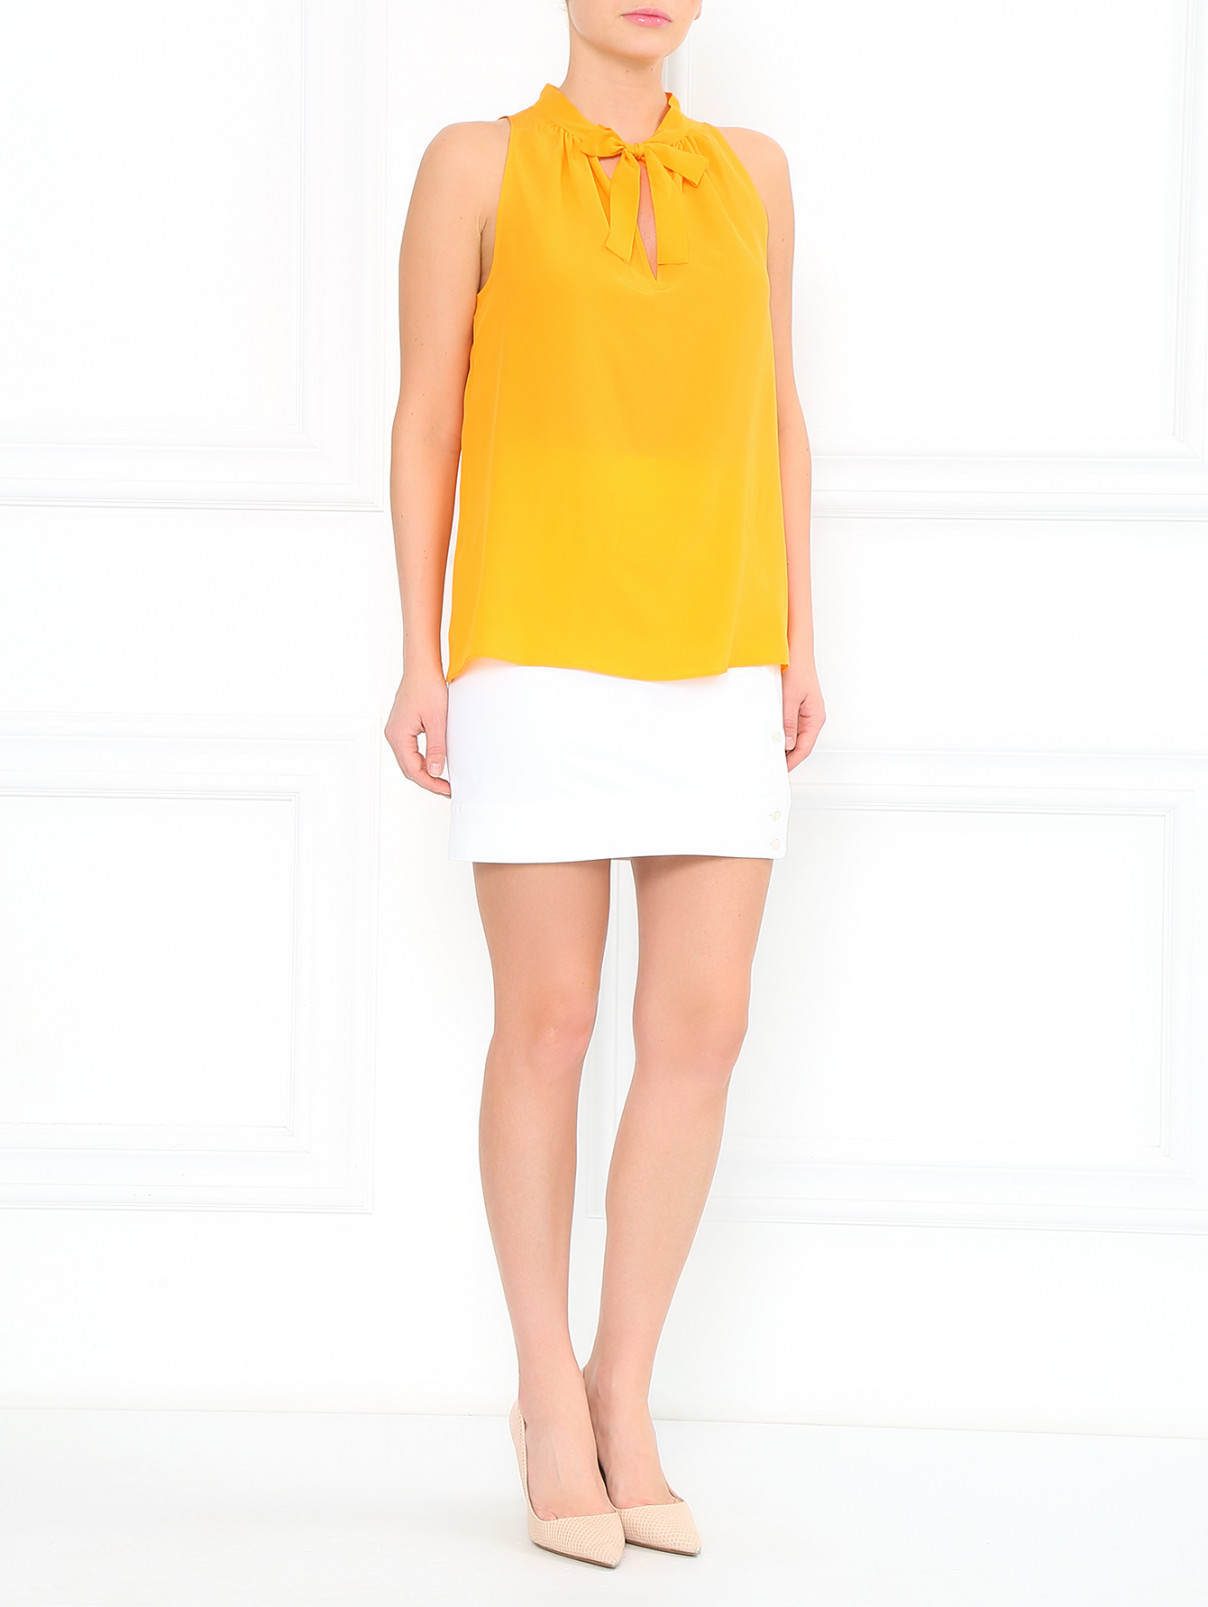 Шелковая блуза без рукавов Moschino Cheap&Chic  –  Модель Общий вид  – Цвет:  Оранжевый